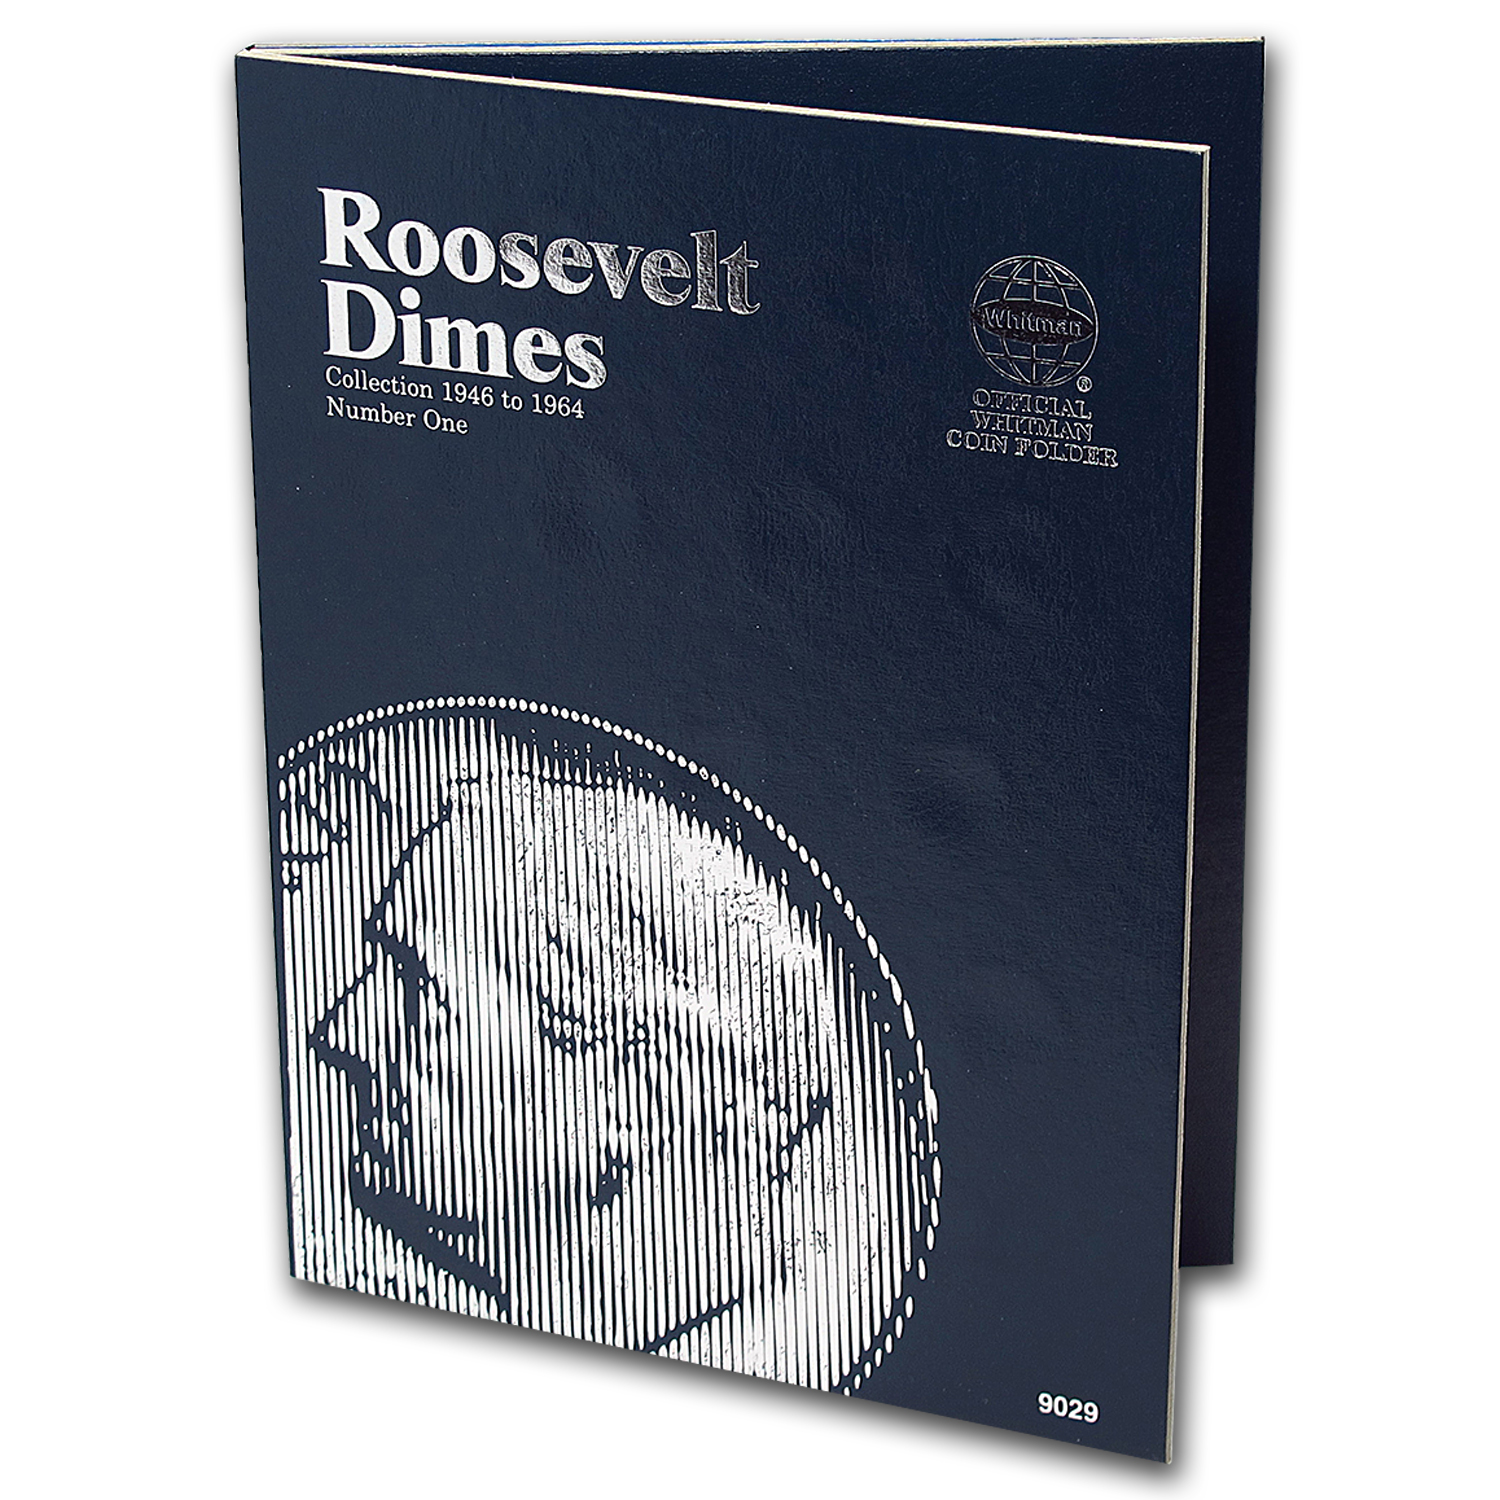 Buy Whitman Folder #9029 - Roosevelt Dimes #1 - 1946-1964